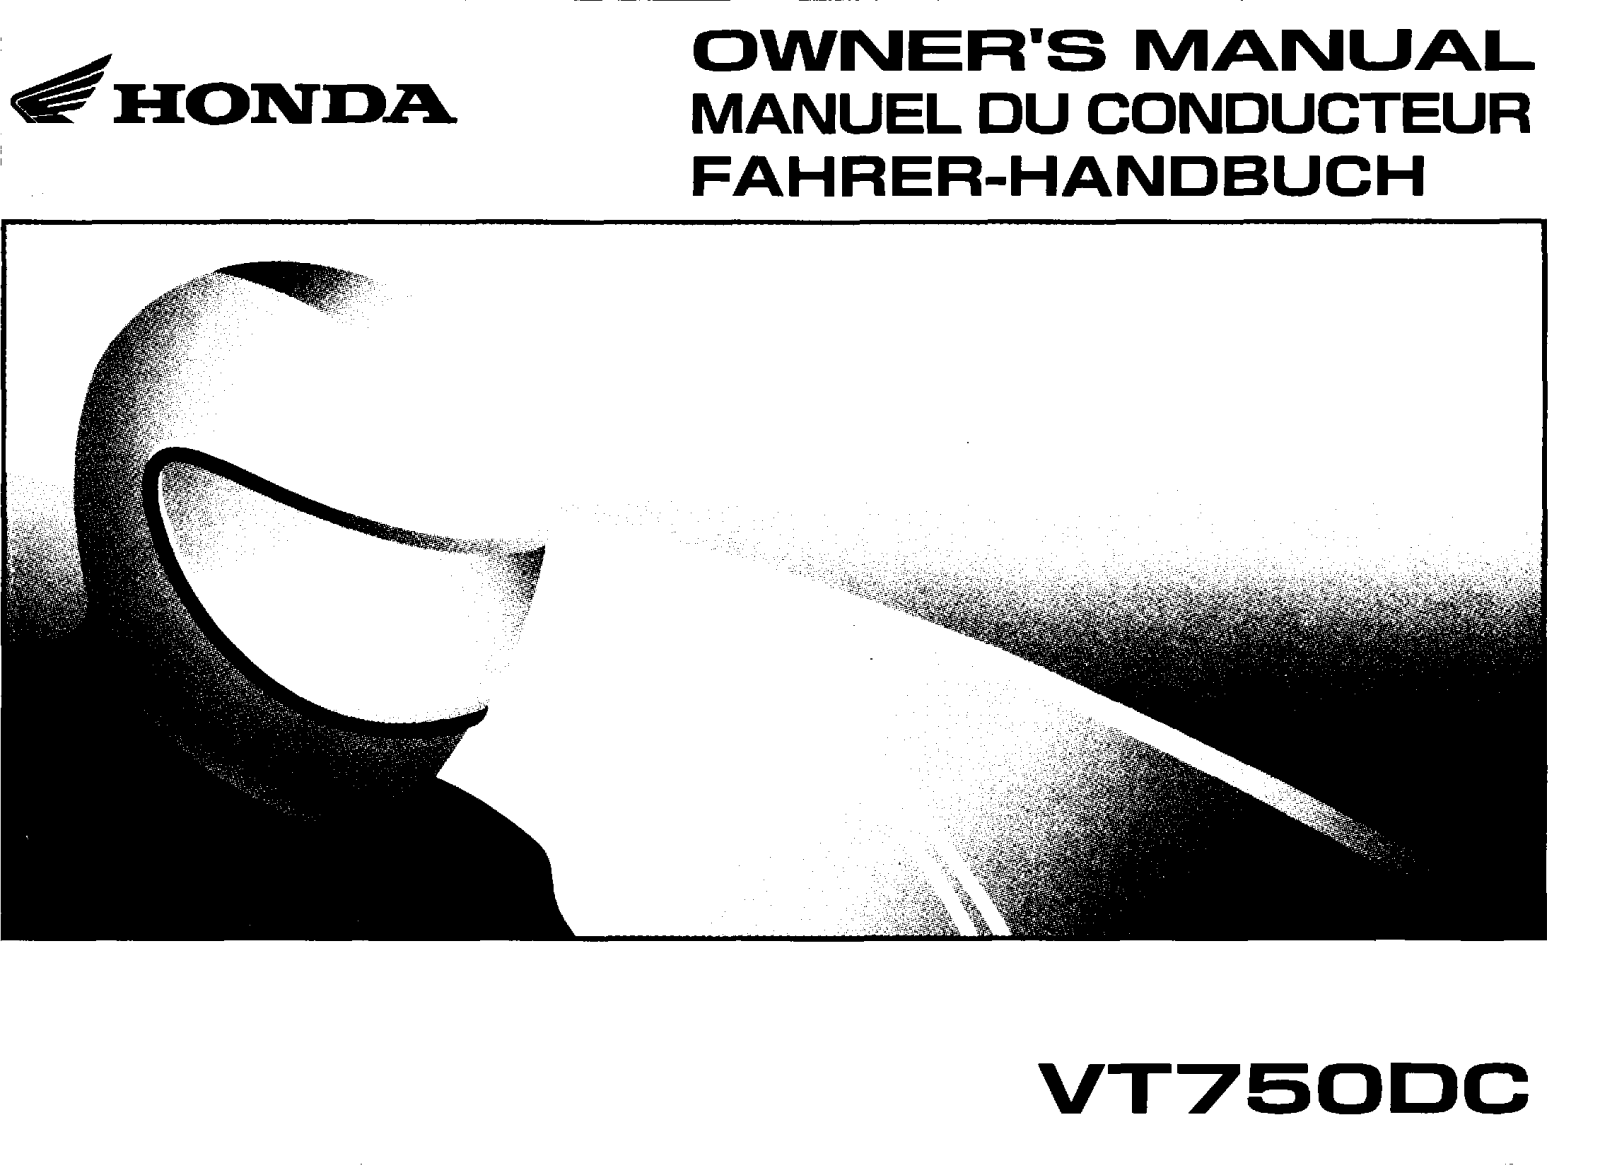 Honda VT750DC Owner's Manual